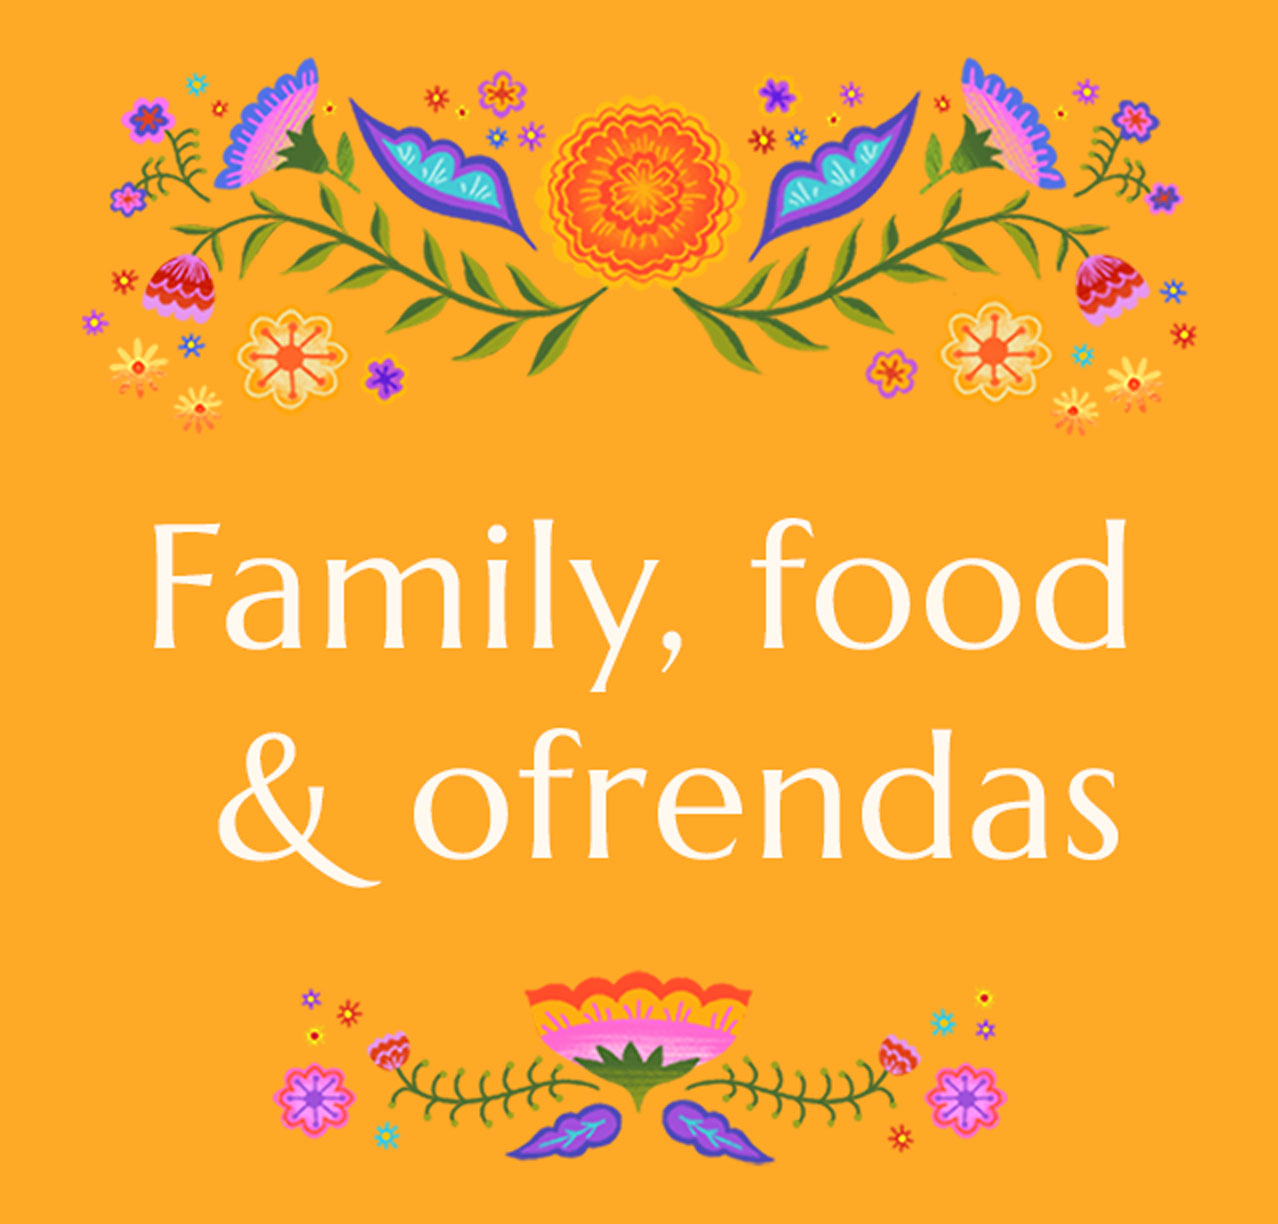 Family, food & ofrendas